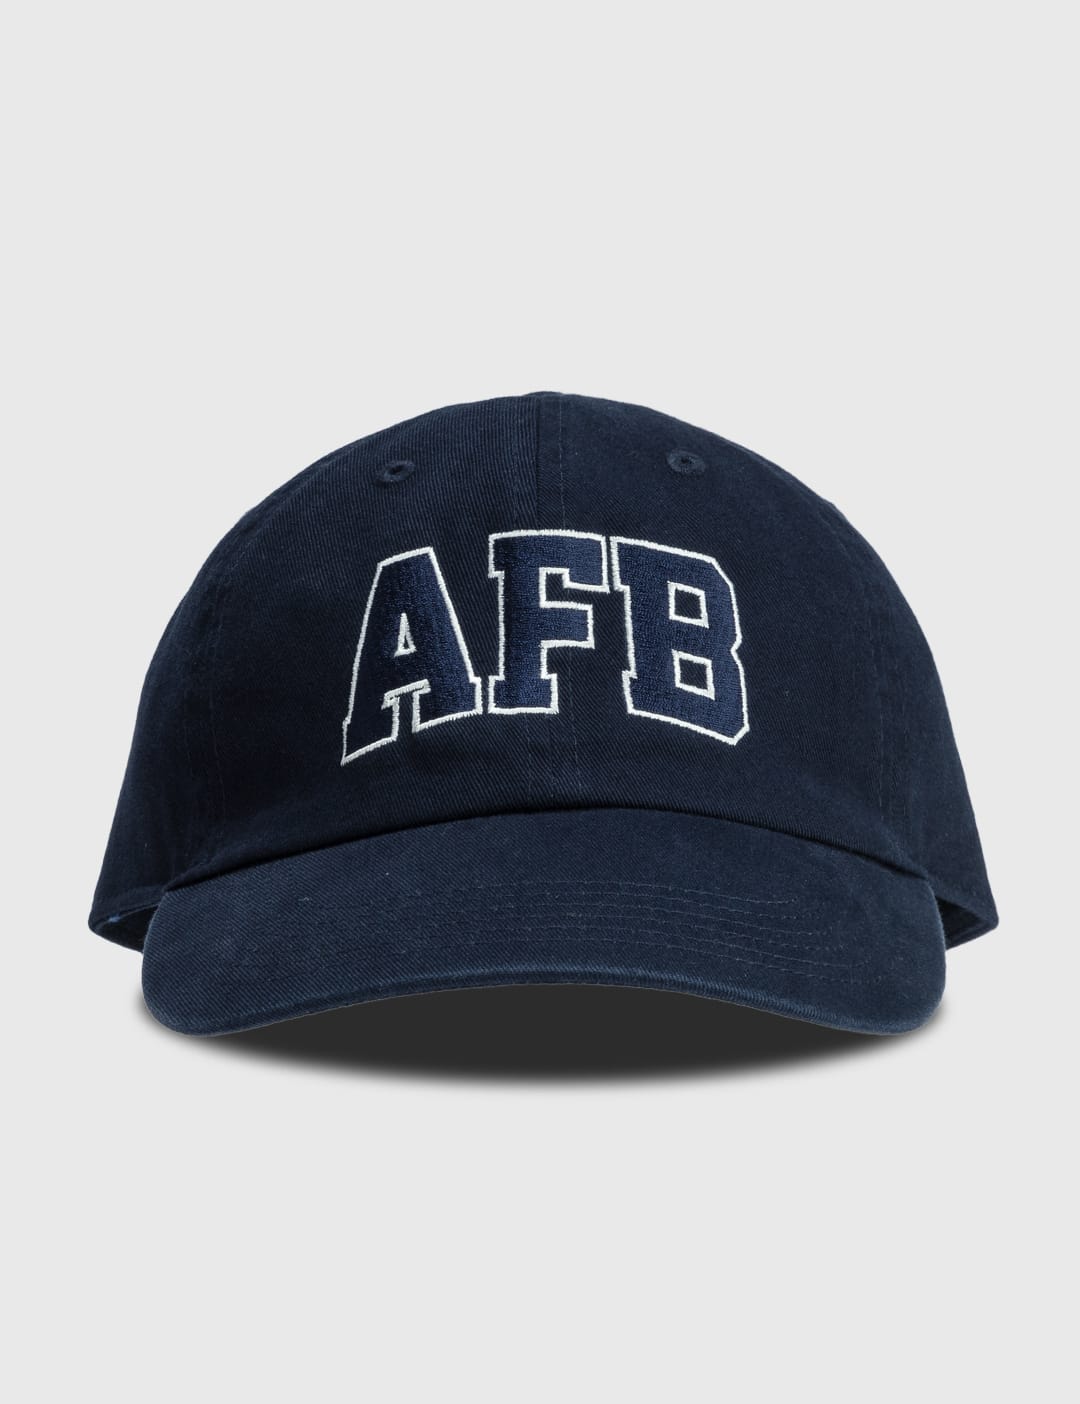 AFB CLASSIC LOGO CAP